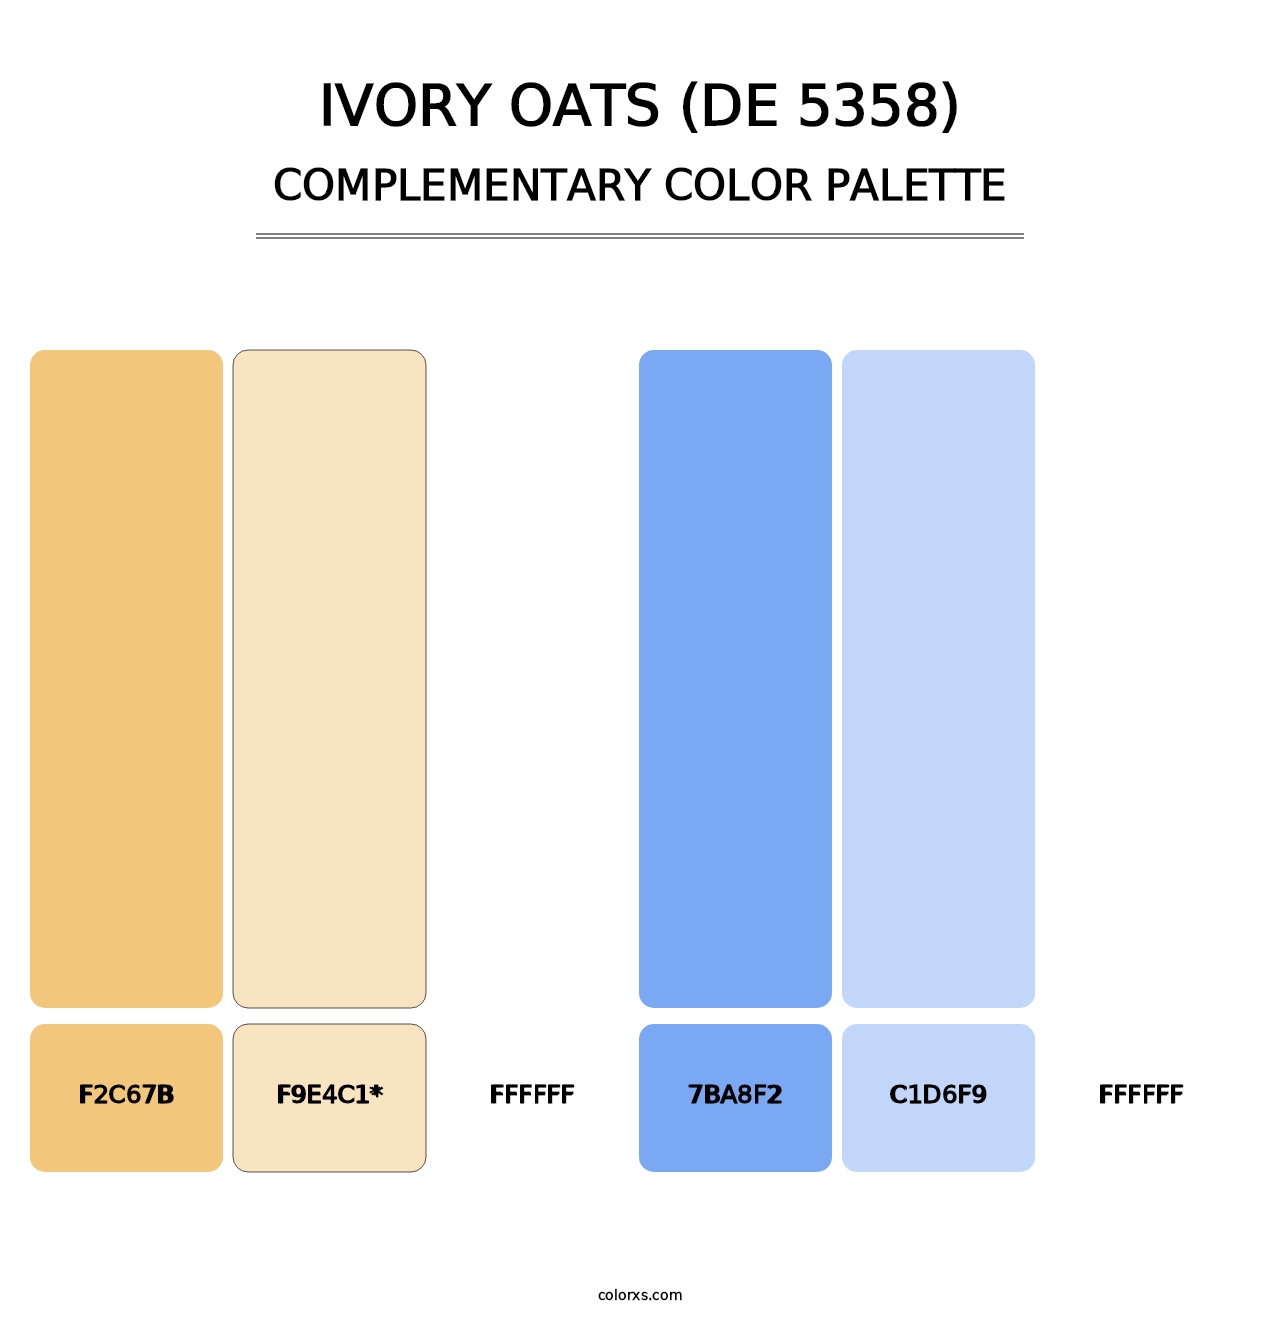 Ivory Oats (DE 5358) - Complementary Color Palette